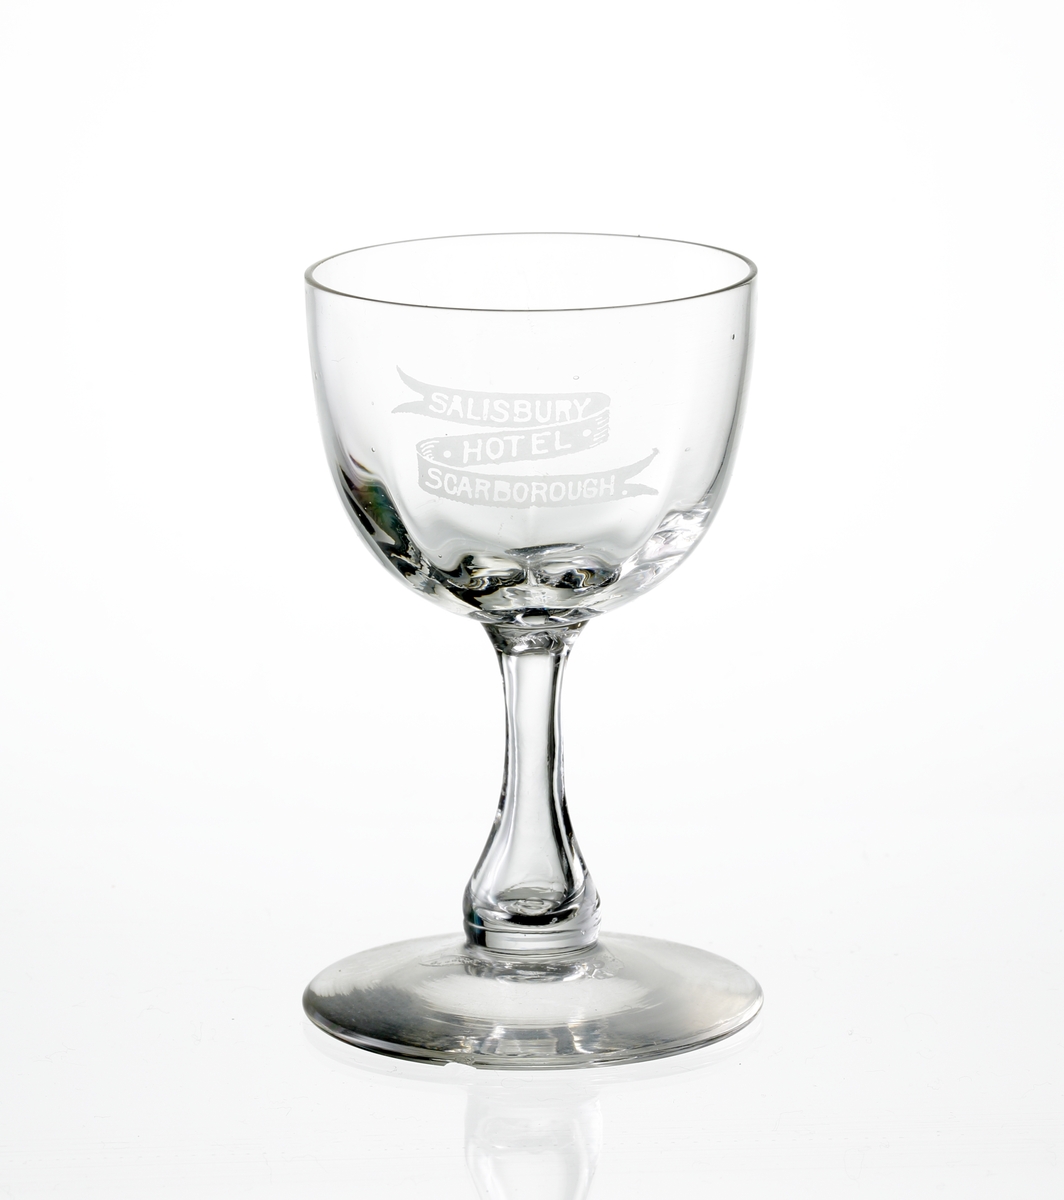 Design: Okänd. 
Sherryglas på luftben och fot. Optikblåst kupa med etsat emblem: "Salisbury Hotel, Scarborough".